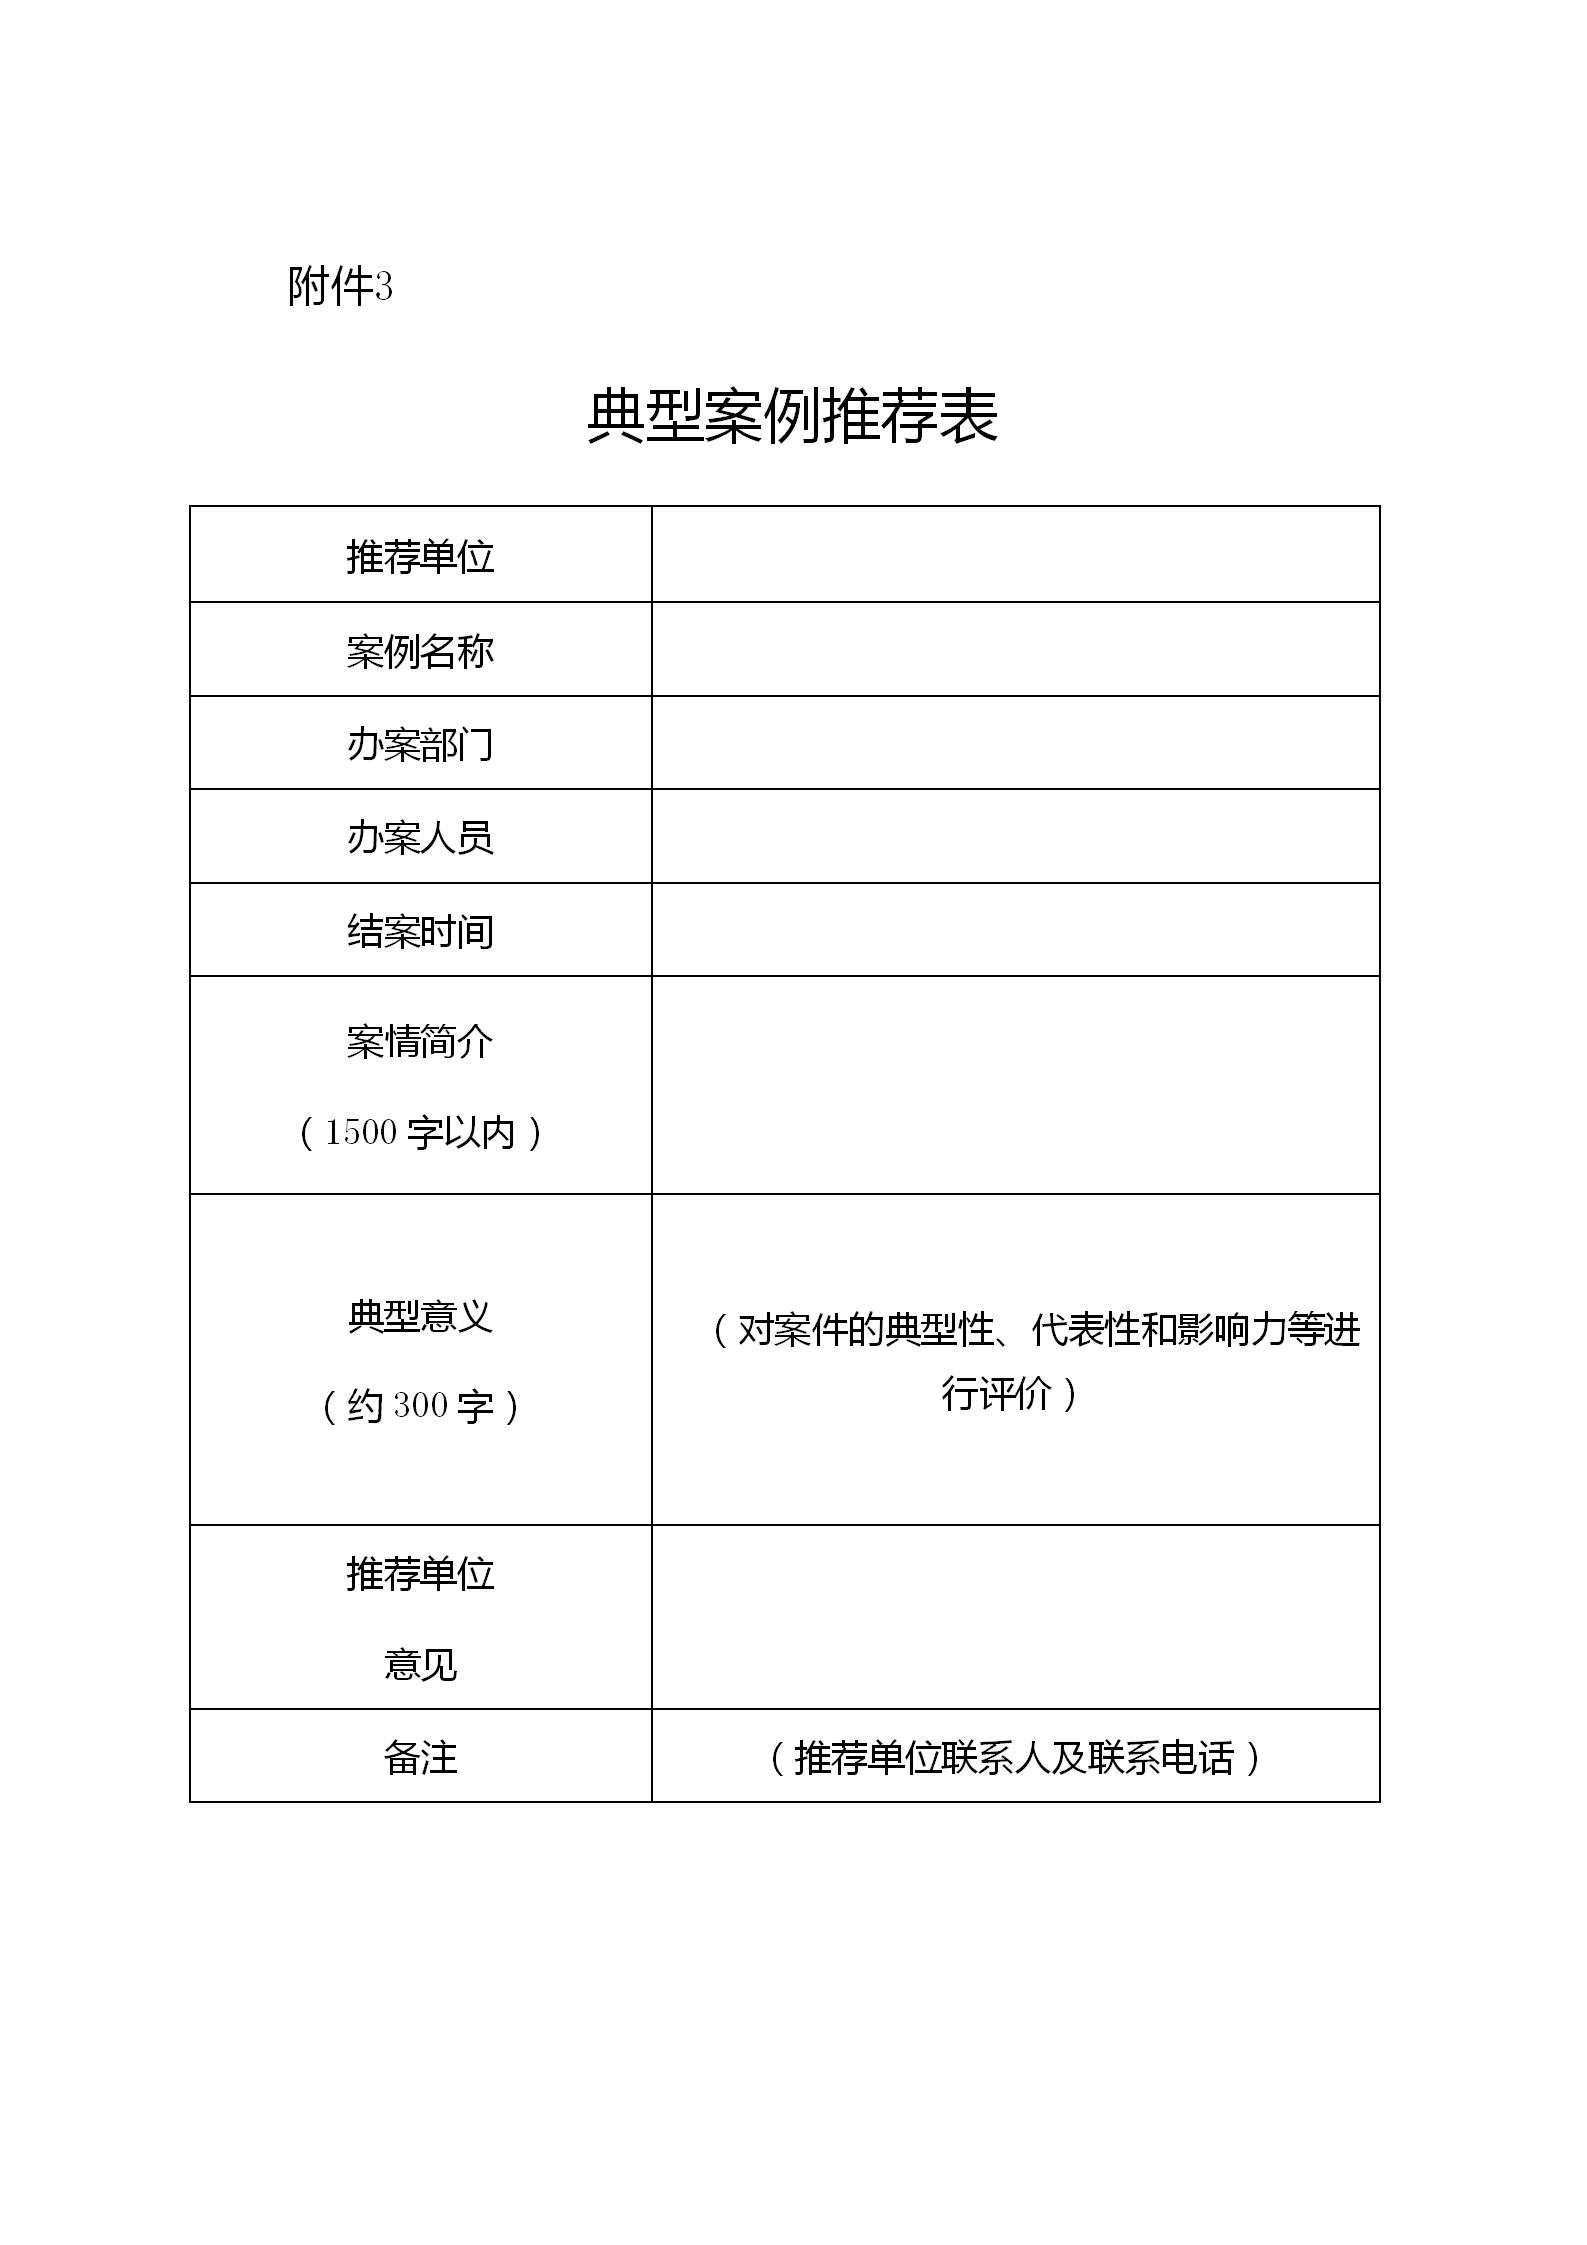 《江苏省商标代理行业专项整治行动实施方案》全文发布！